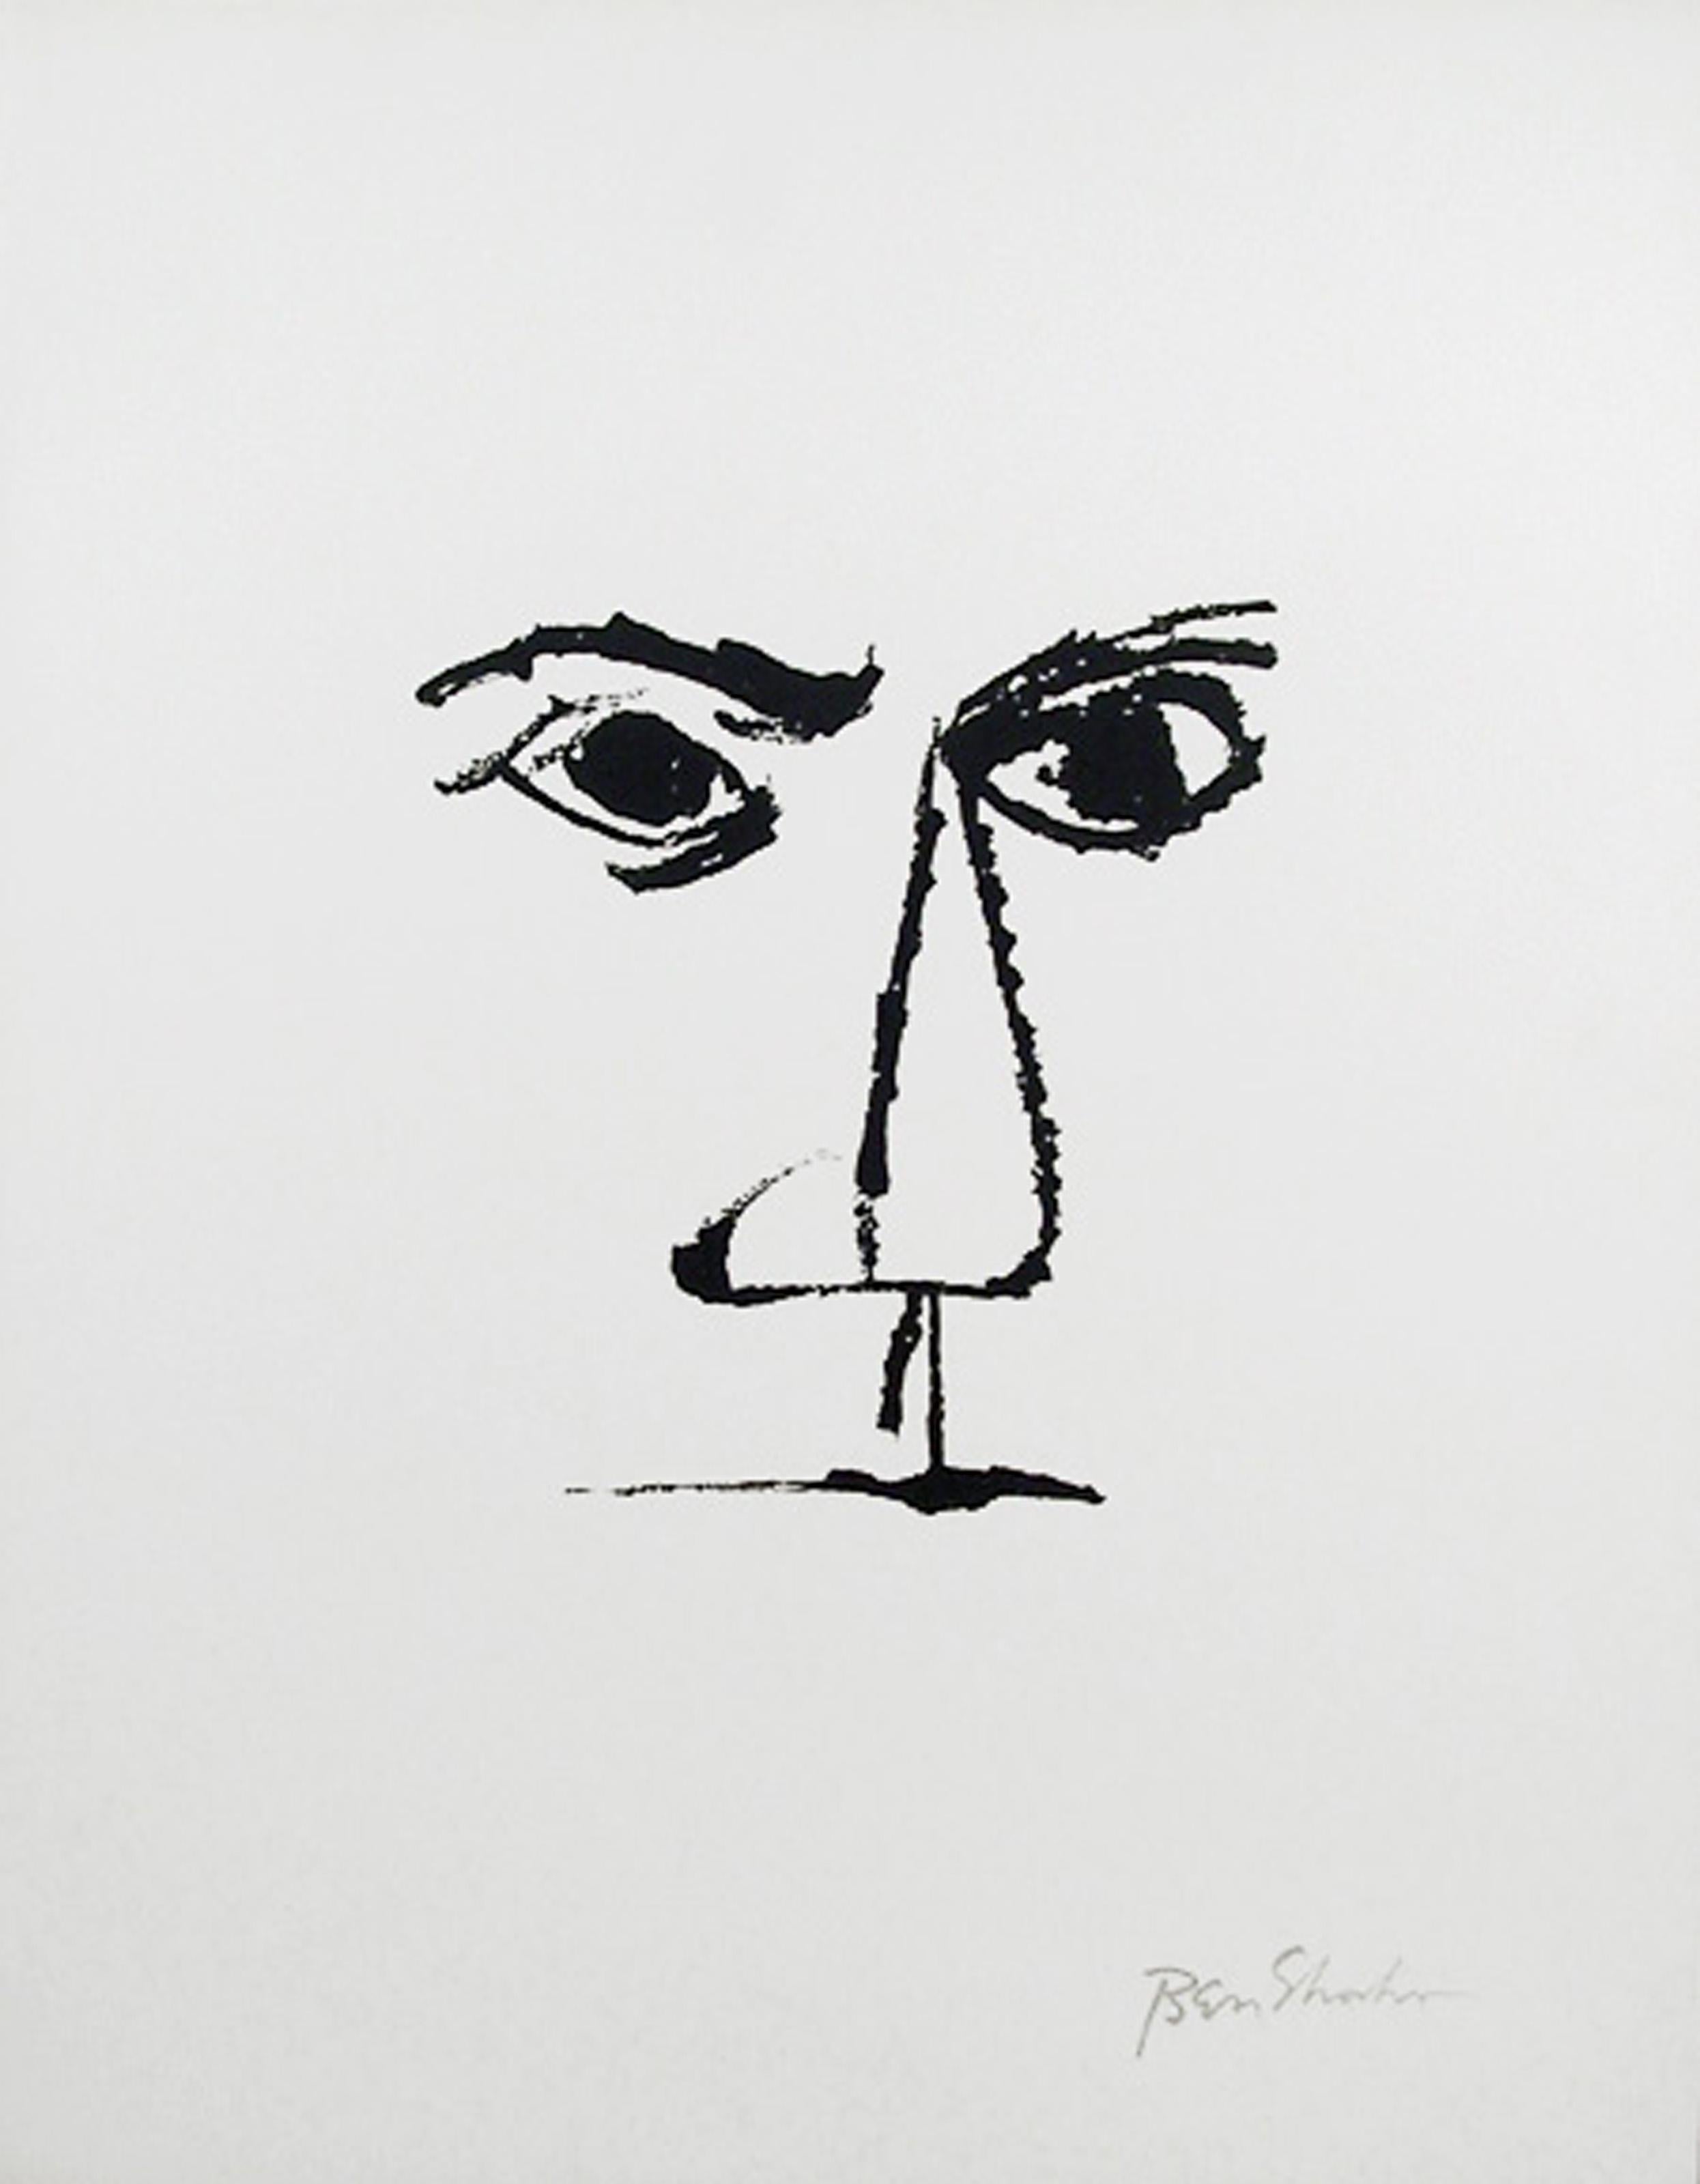 Frontispice du Portfolio Rilke, lithographie minimaliste de Ben Shahn